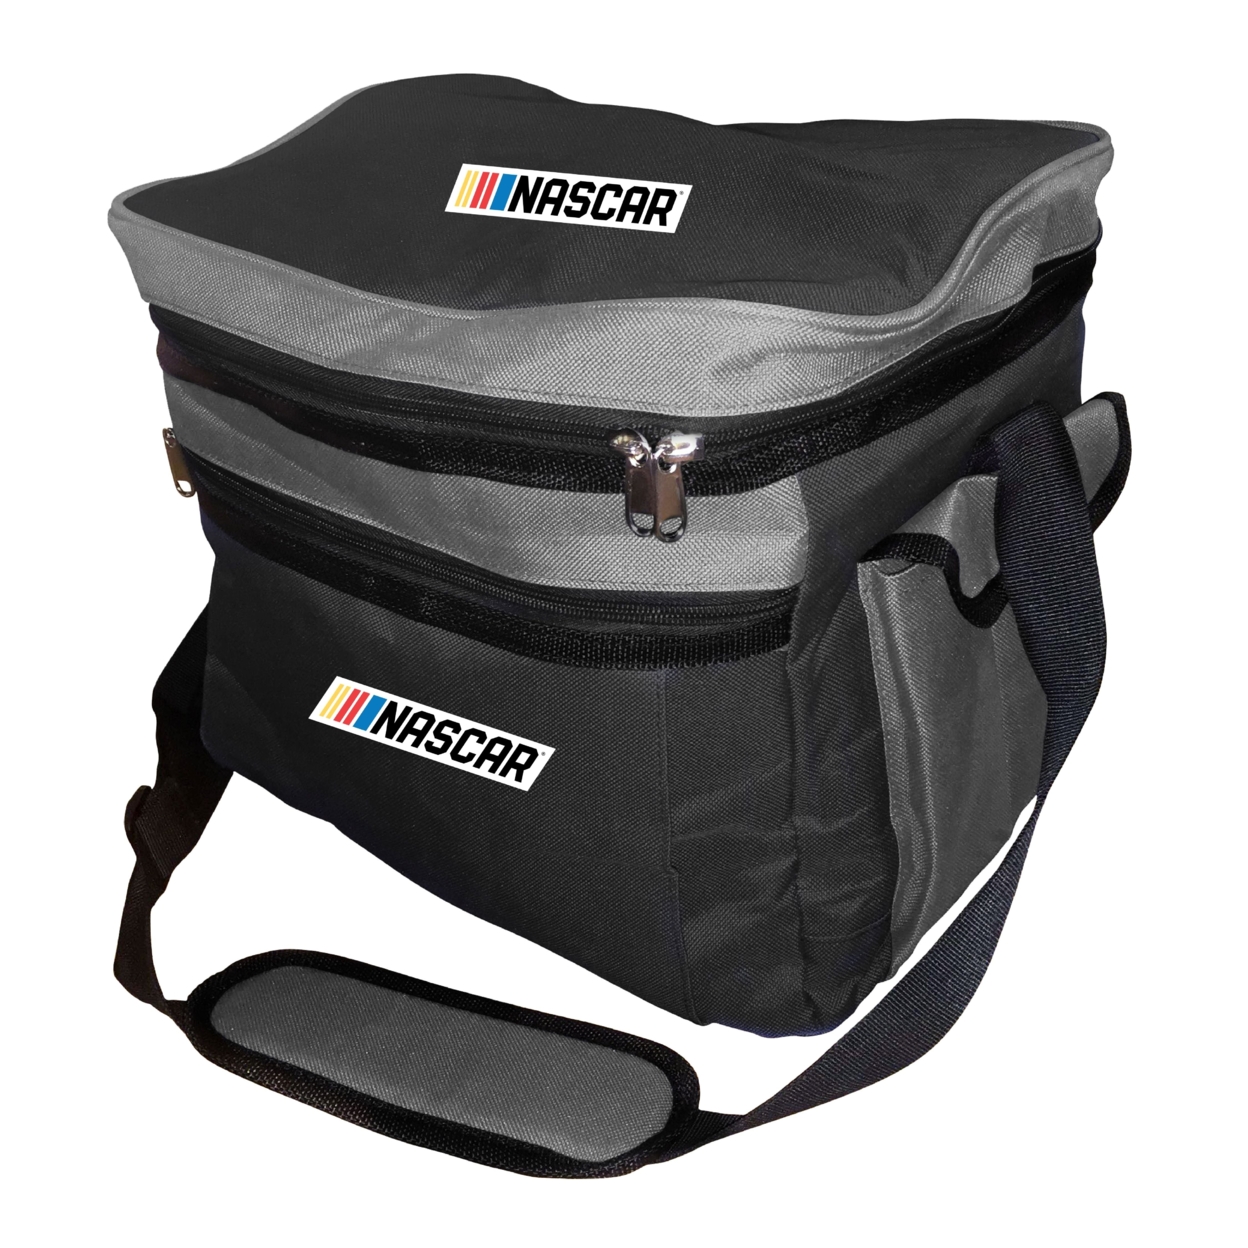 NASCAR Officially Licensed 24 Pack Cooler Bag